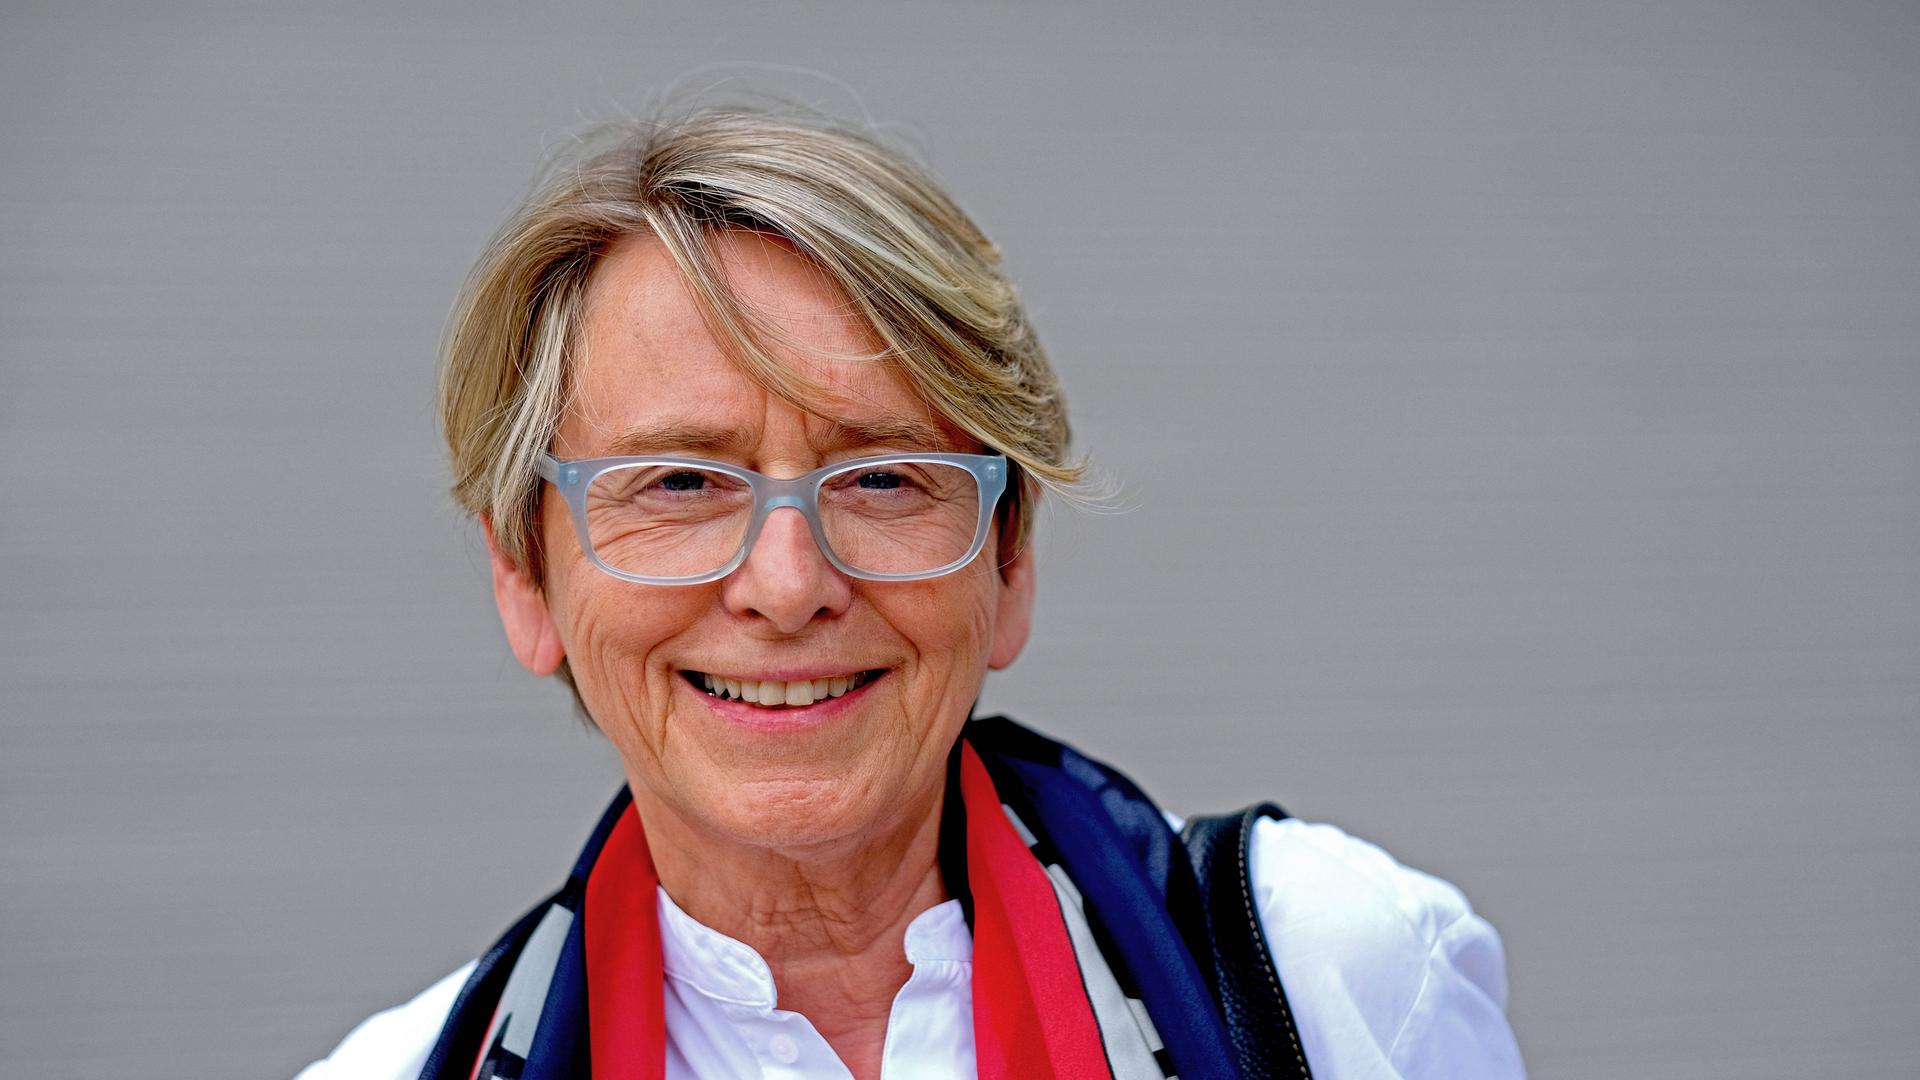 Porträt von Ute Eskildsen vom 04.06.2021 bei der Eröffnung des Künstlerhauses in Göttingen